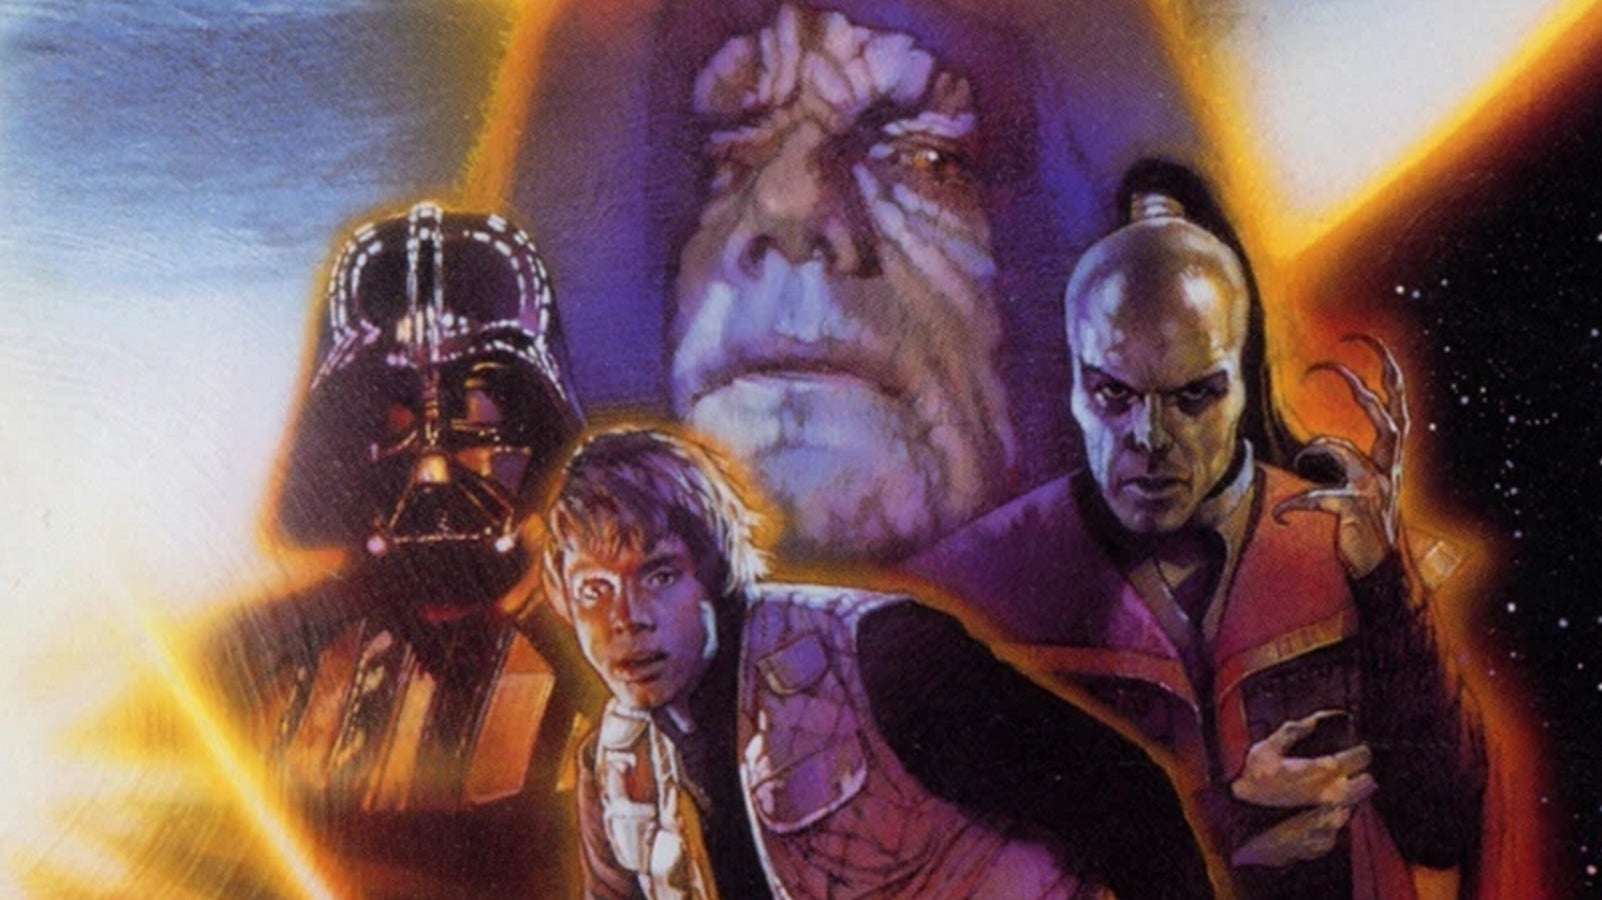 Bilder zu Star Wars: Shadows of the Empire: Der Soundtrack erscheint neu auf Vinyl und CD